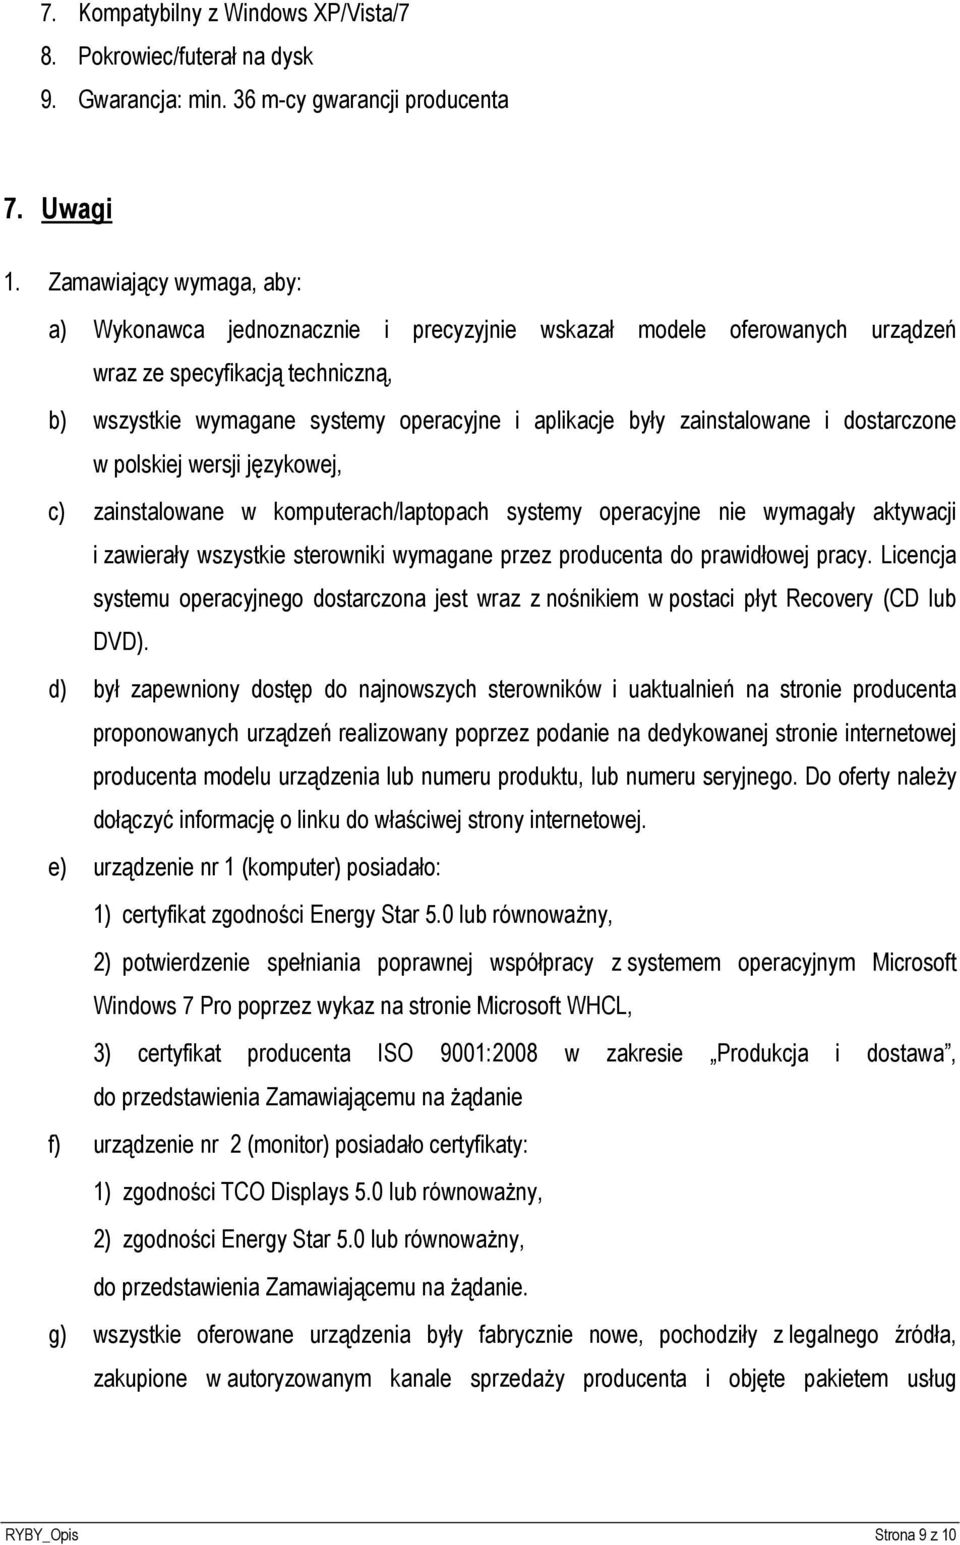 zainstalowane i dostarczone w polskiej wersji językowej, c) zainstalowane w komputerach/laptopach systemy operacyjne nie wymagały aktywacji i zawierały wszystkie sterowniki wymagane przez producenta